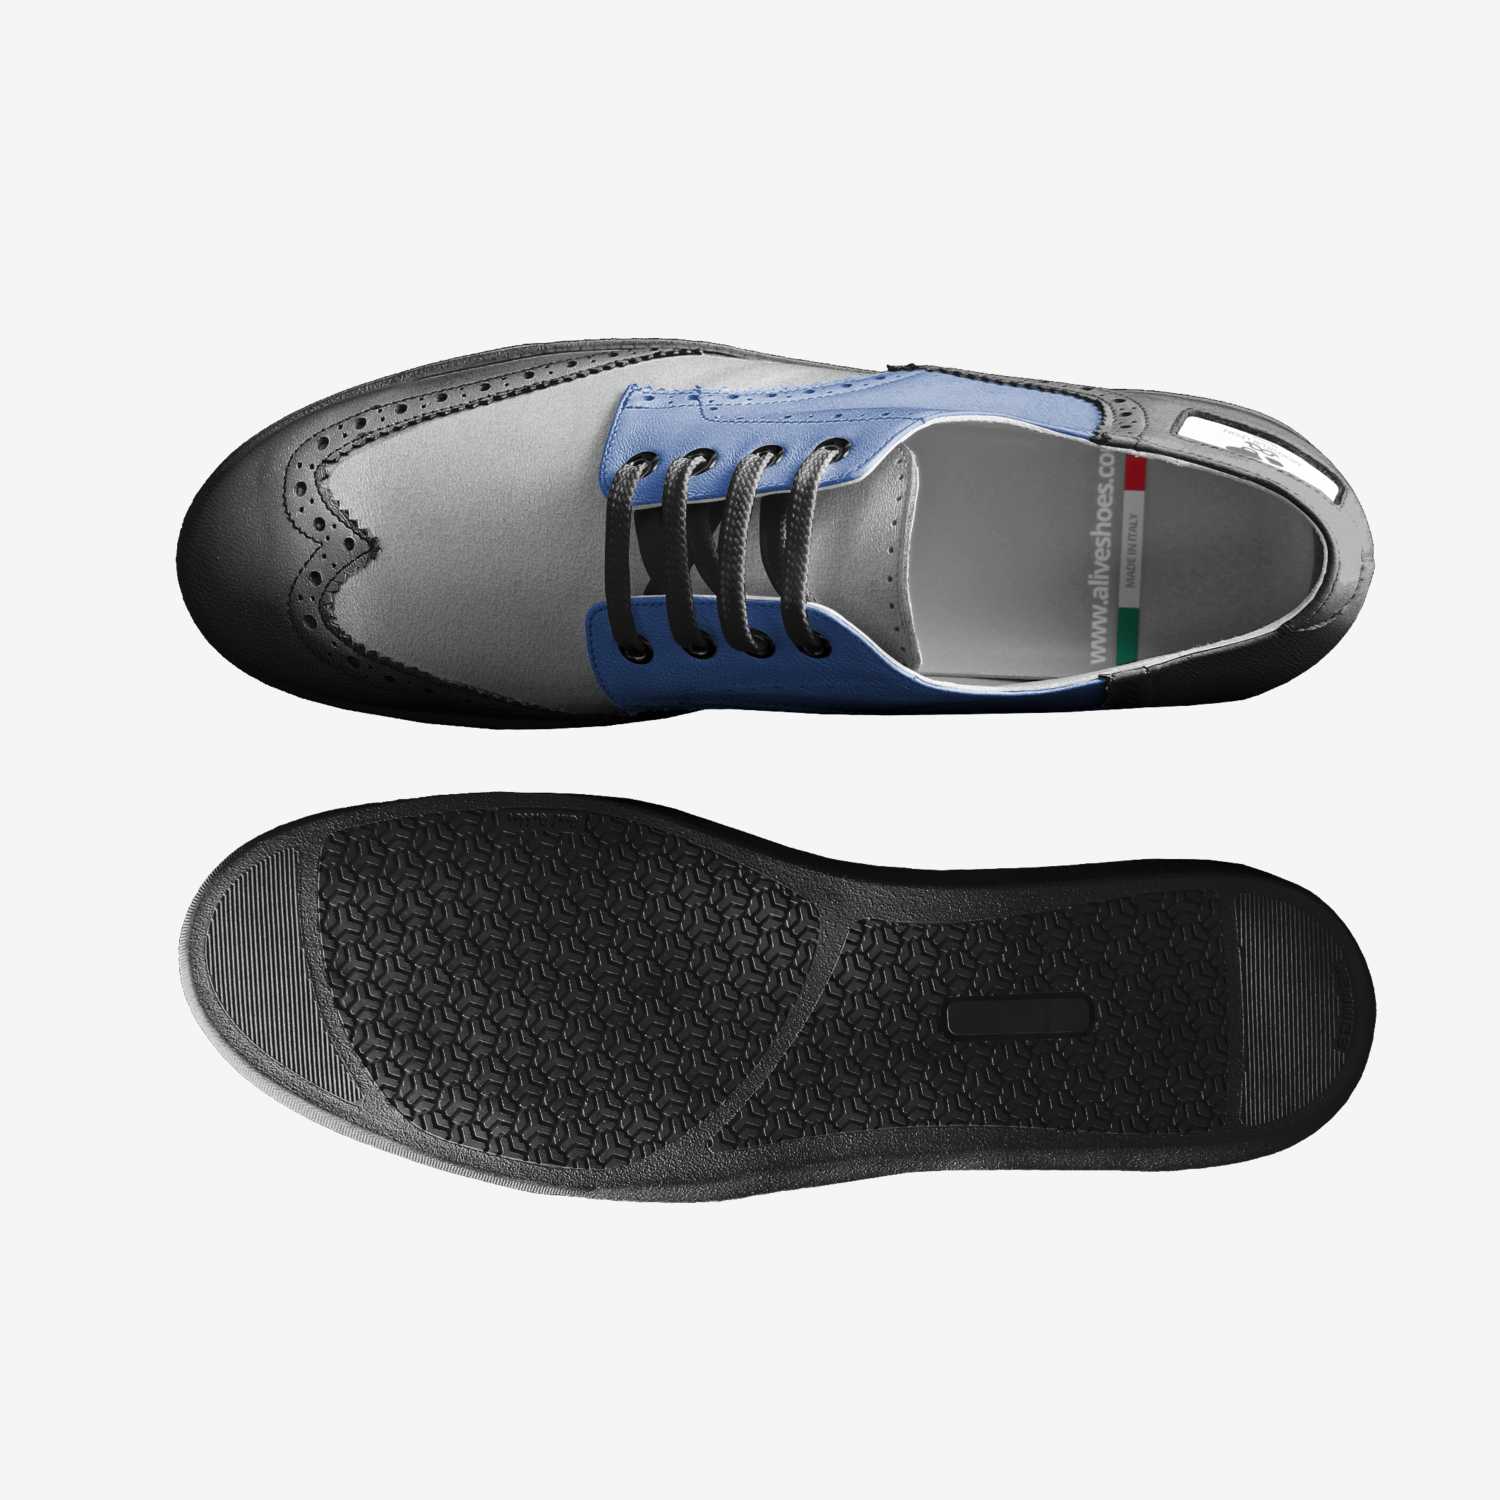 BROZER | A Custom Shoe concept by Monsieur Léon